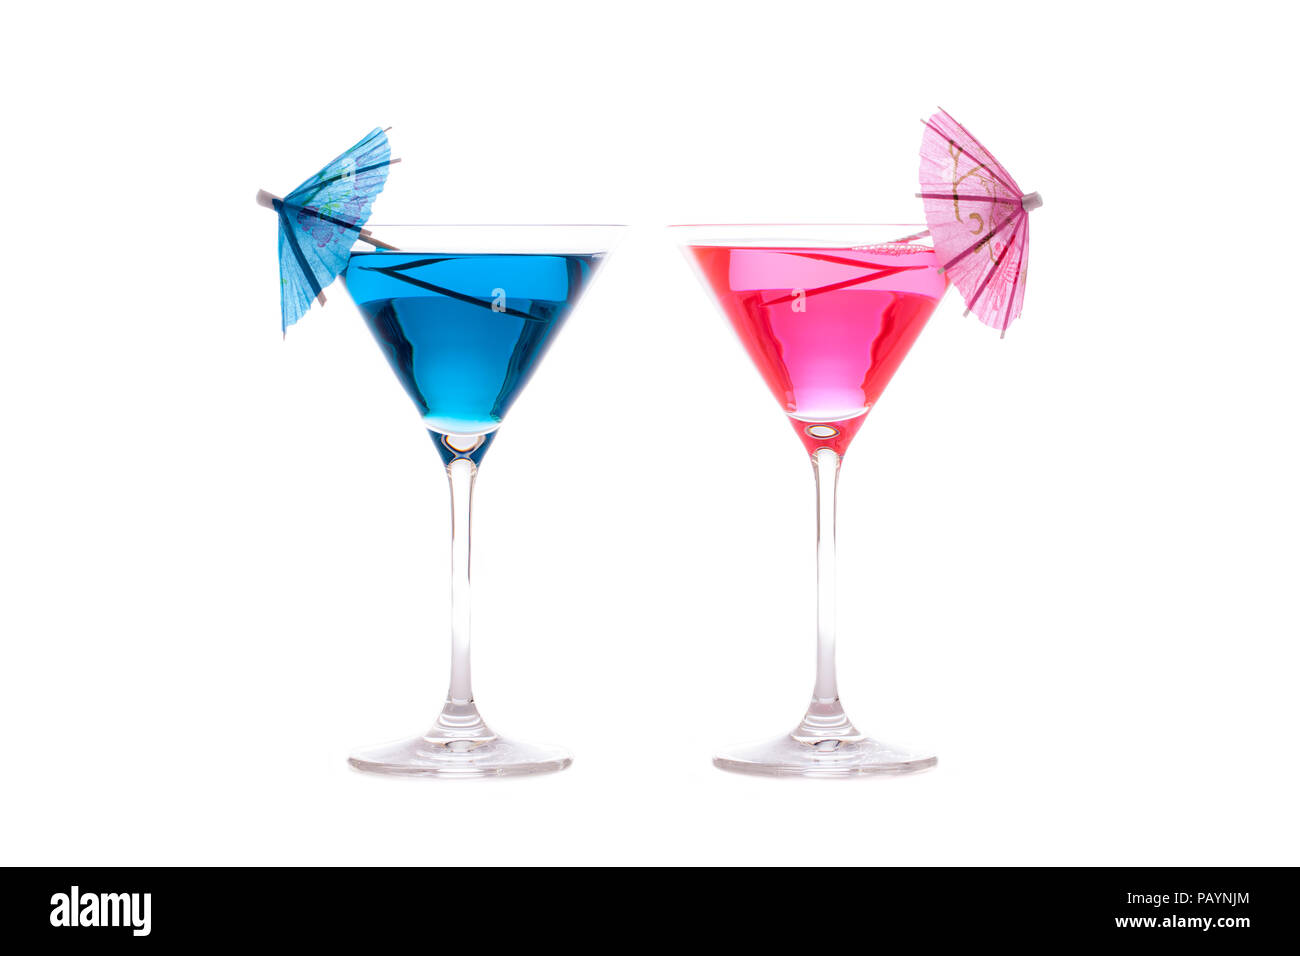 Di lui e di lei parte o cocktail di vacanza. Il neon blu e rosa divertimento estivo bevande alcoliche in bicchieri da cocktail con ombrelloni decorativa. Nuovamente isolato Foto Stock